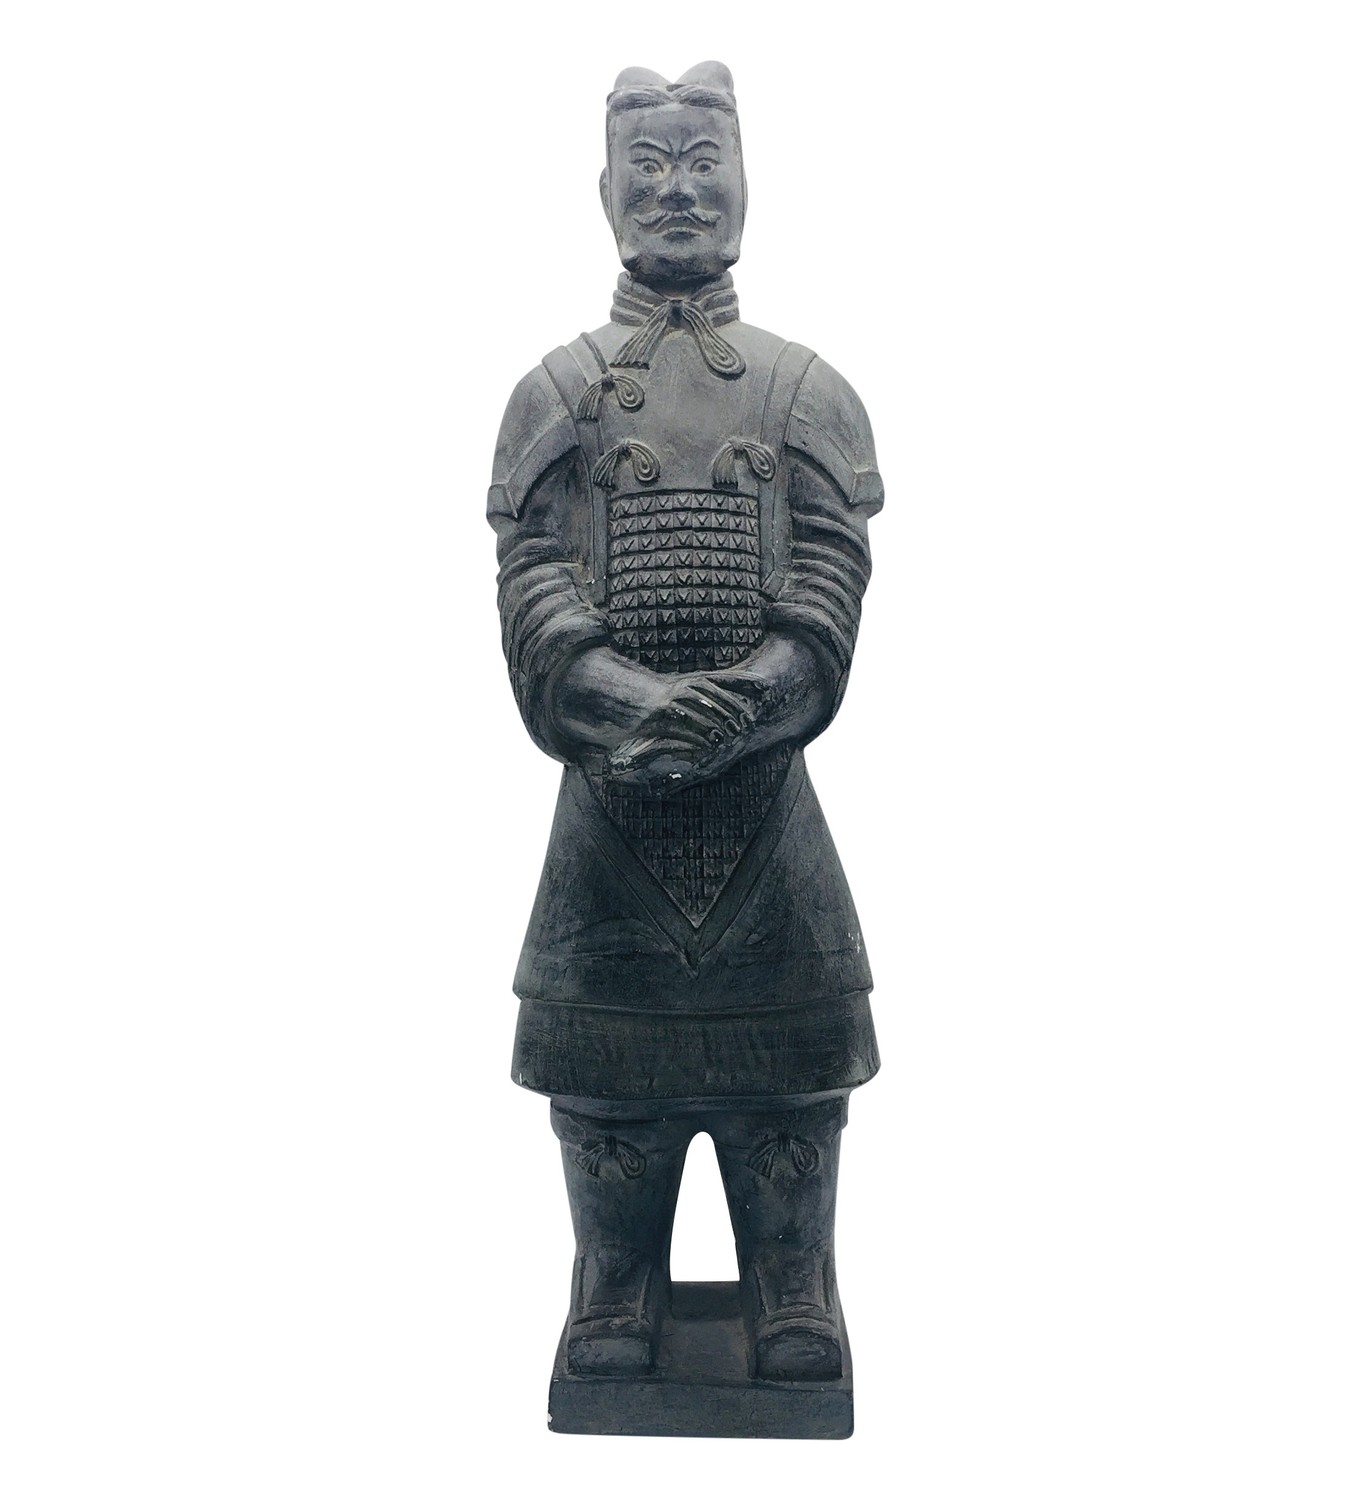 26" Charcoal Warrior Statue Indoor Outdoor Statue